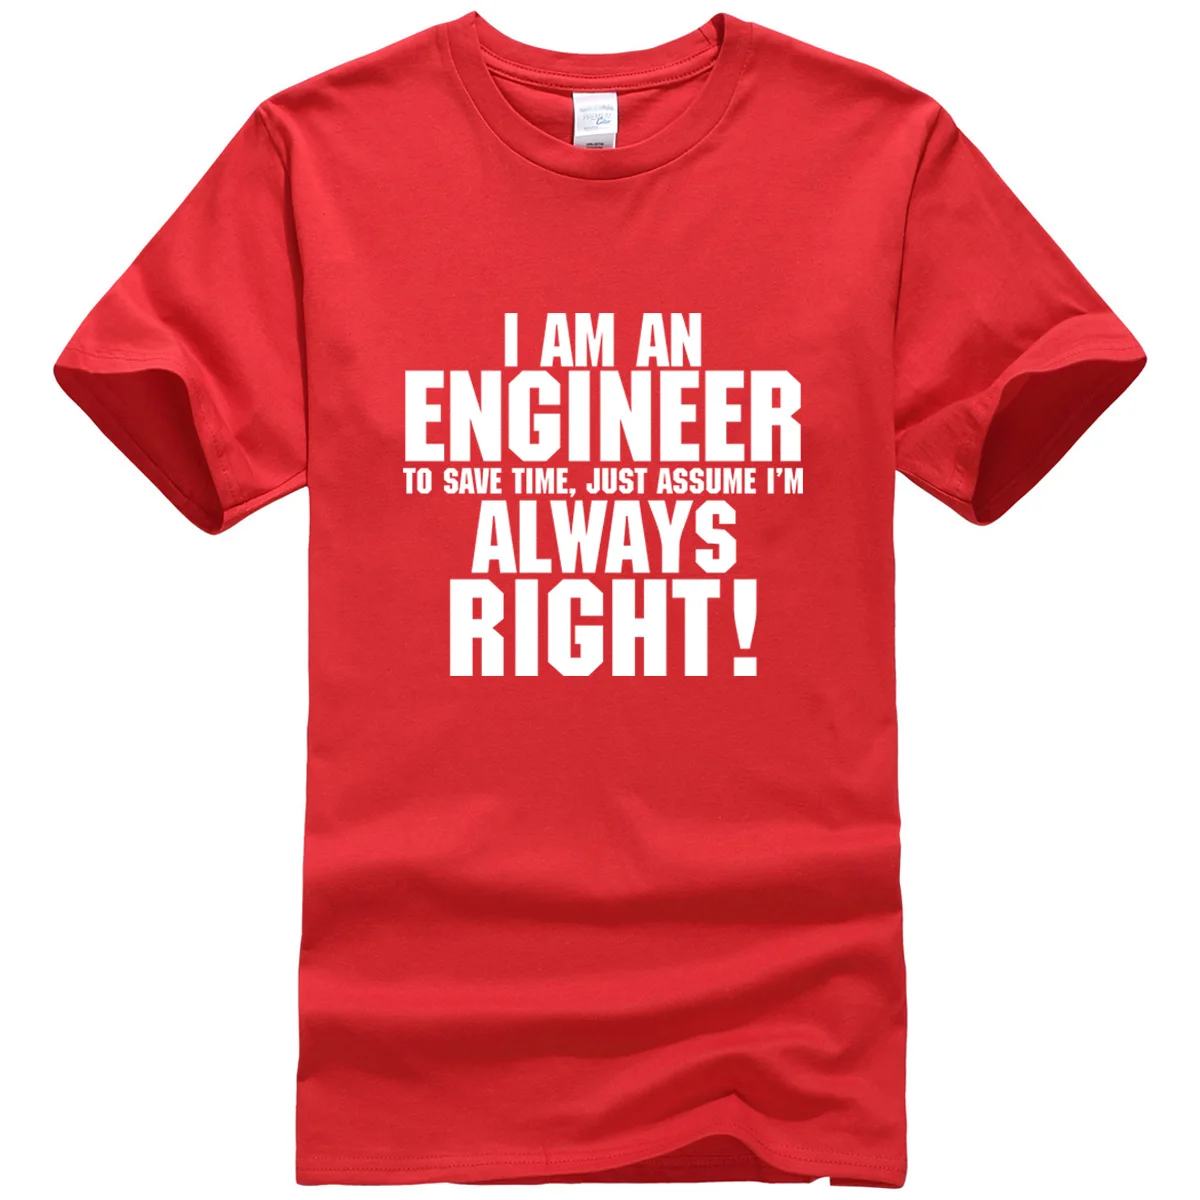 Мужская хлопковая футболка,, I Am An Engineer I Always Right, модная уличная футболка, топы, футболки kpop, брендовая одежда, больше размеров - Цвет: red